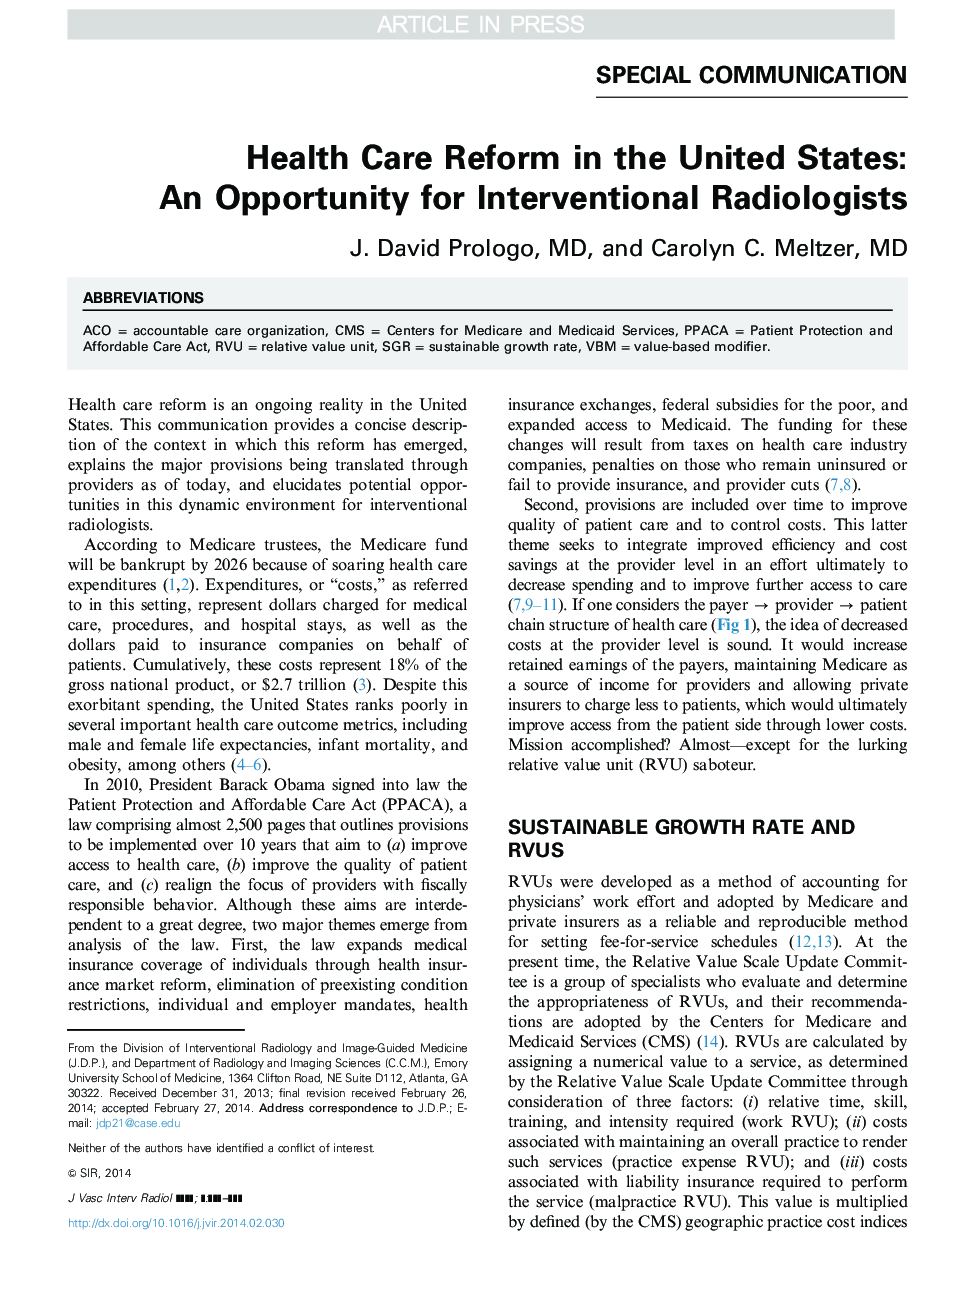 اصلاحات بهداشتی در ایالات متحده: فرصتی برای رادیولوژیست های مداخله ای است 